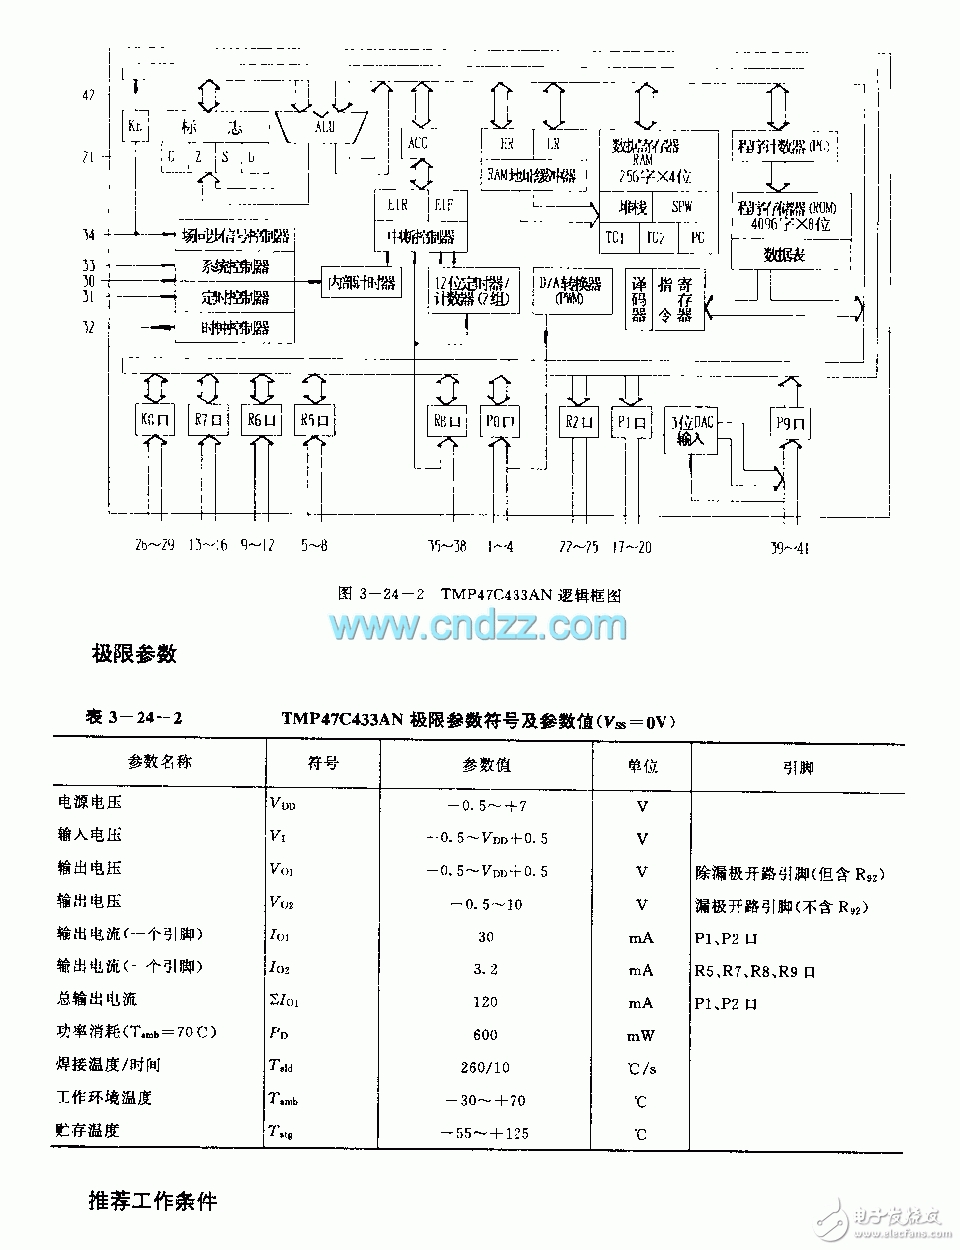 TMP47C433AN 微处理器电路图结构分析（电视机）